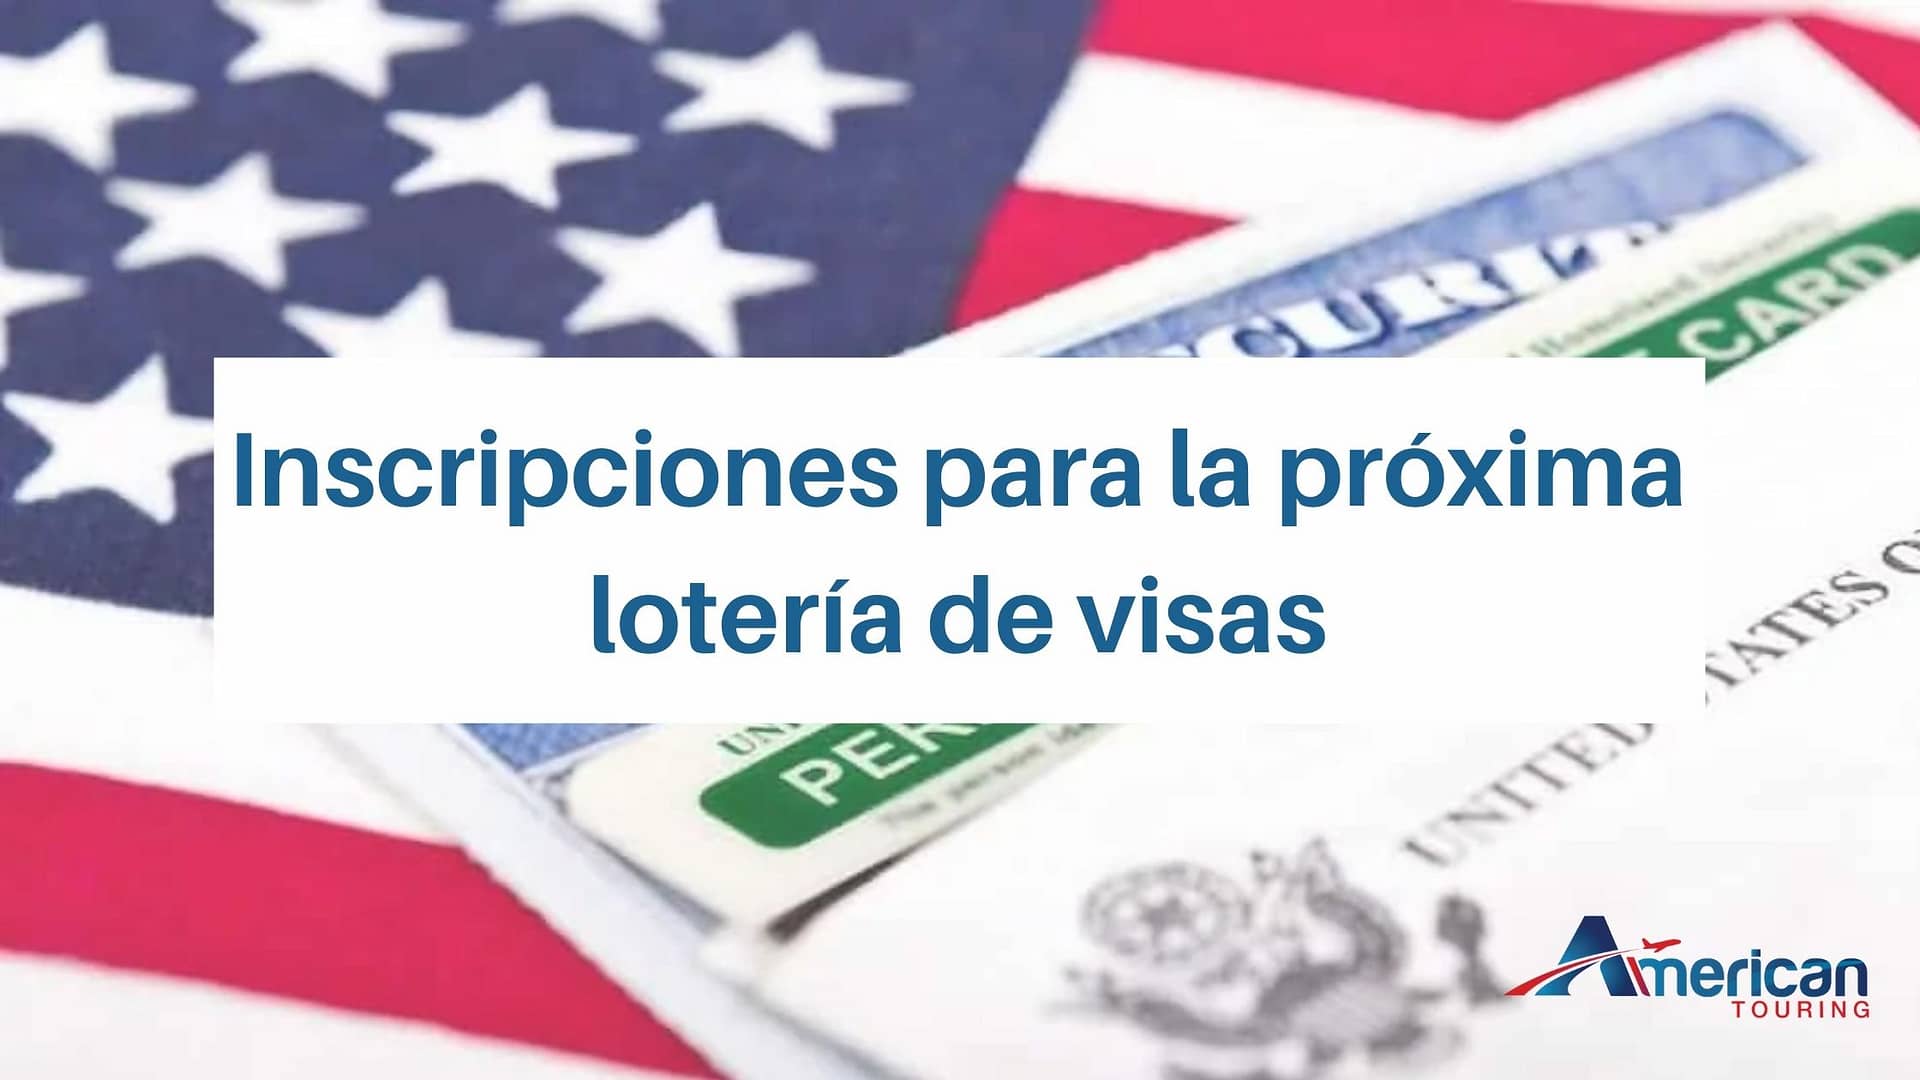 Inscripciones para la próxima lotería de visas